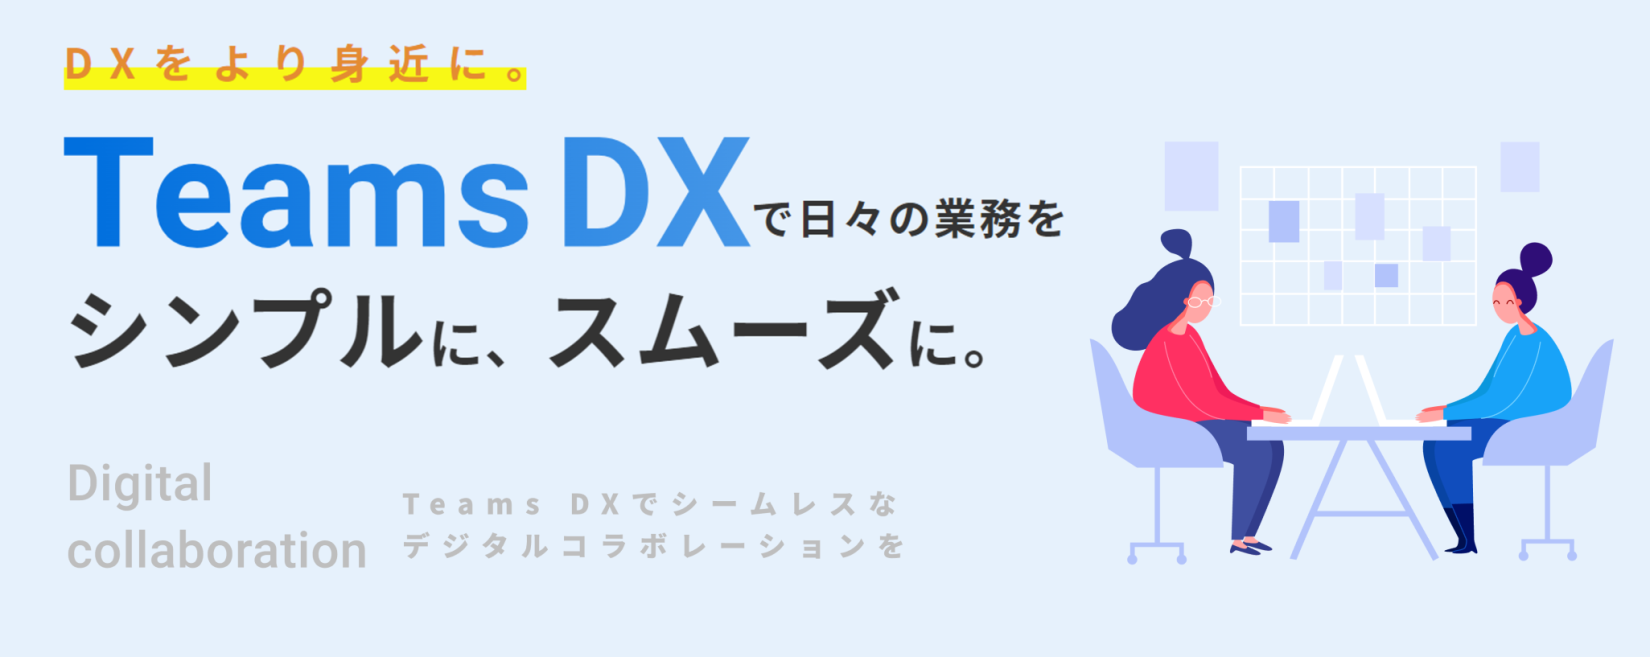 Teams DX ～Teams アプリ 導入支援～ バナー